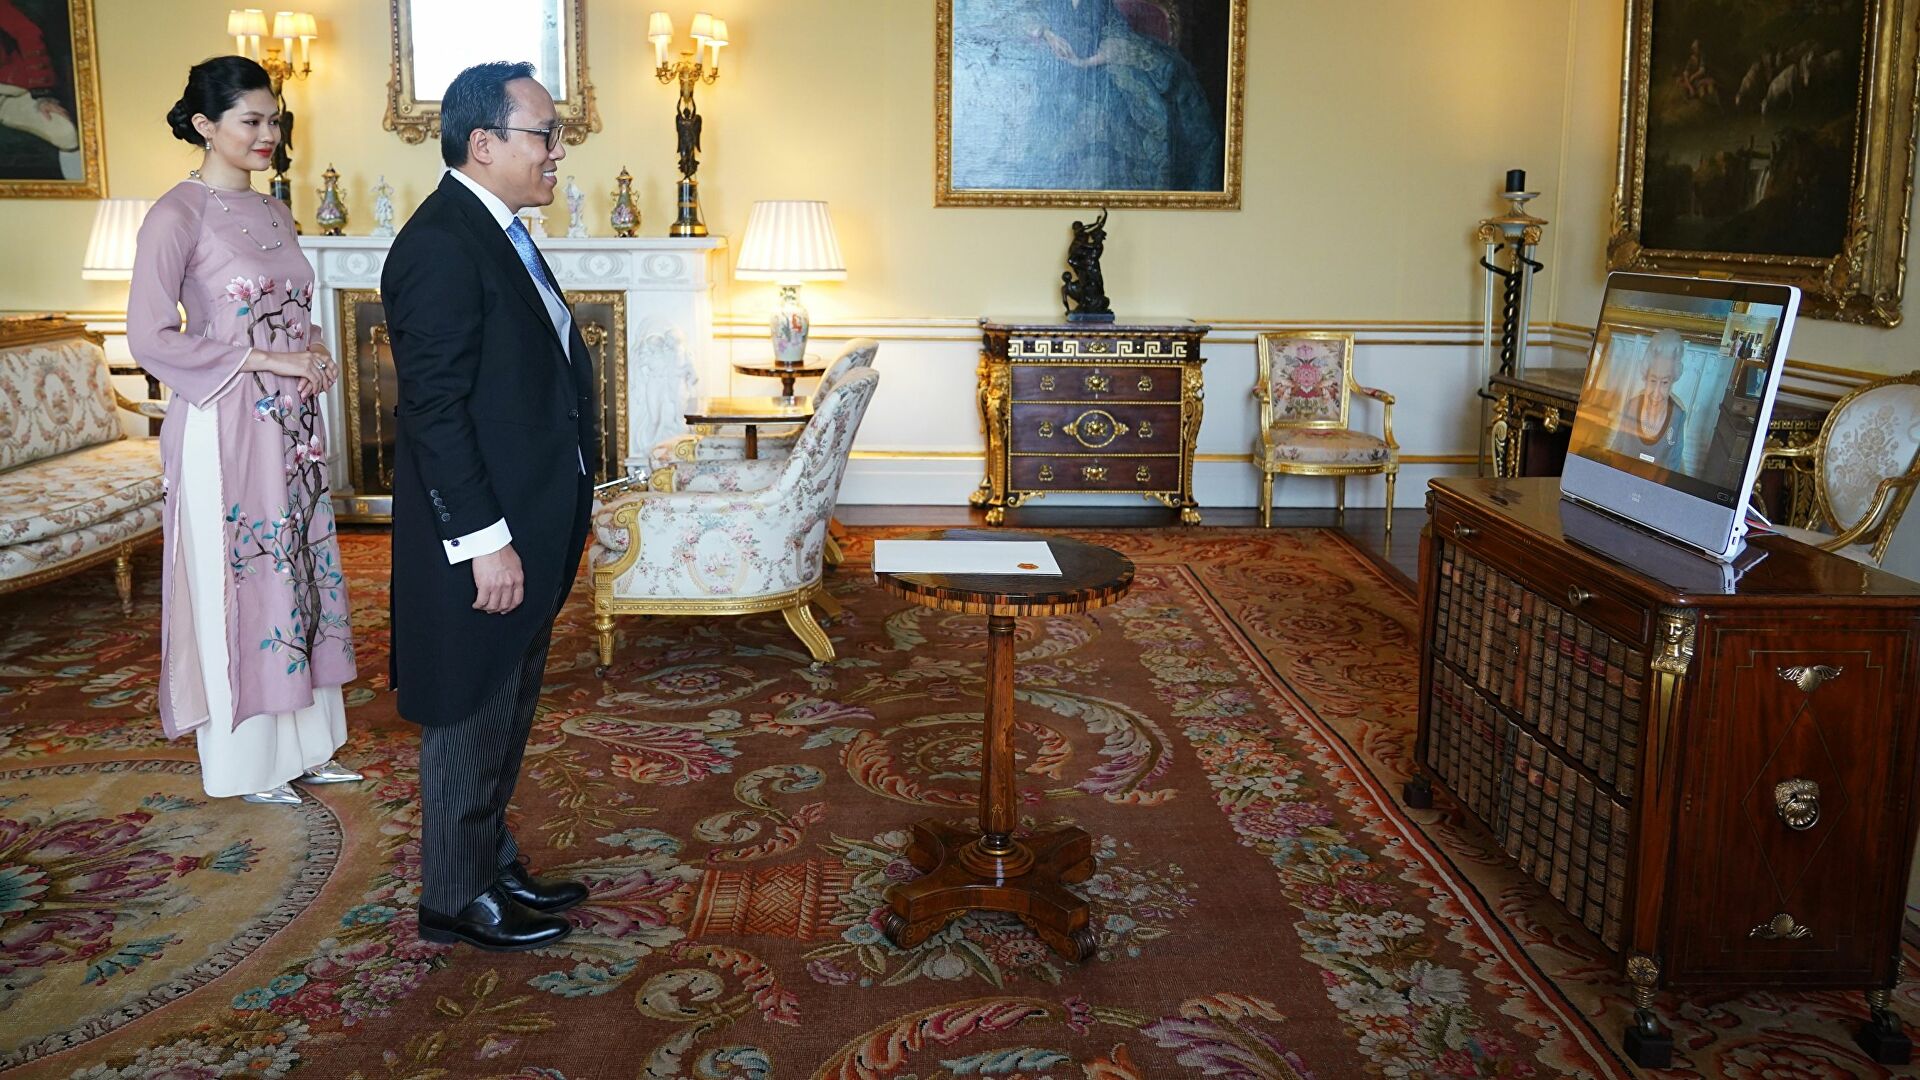 Nữ hoàng Anh Elizabeth II dự buổi tiếp kiến trực tuyến với Đại sứ Việt Nam - Ảnh 1.